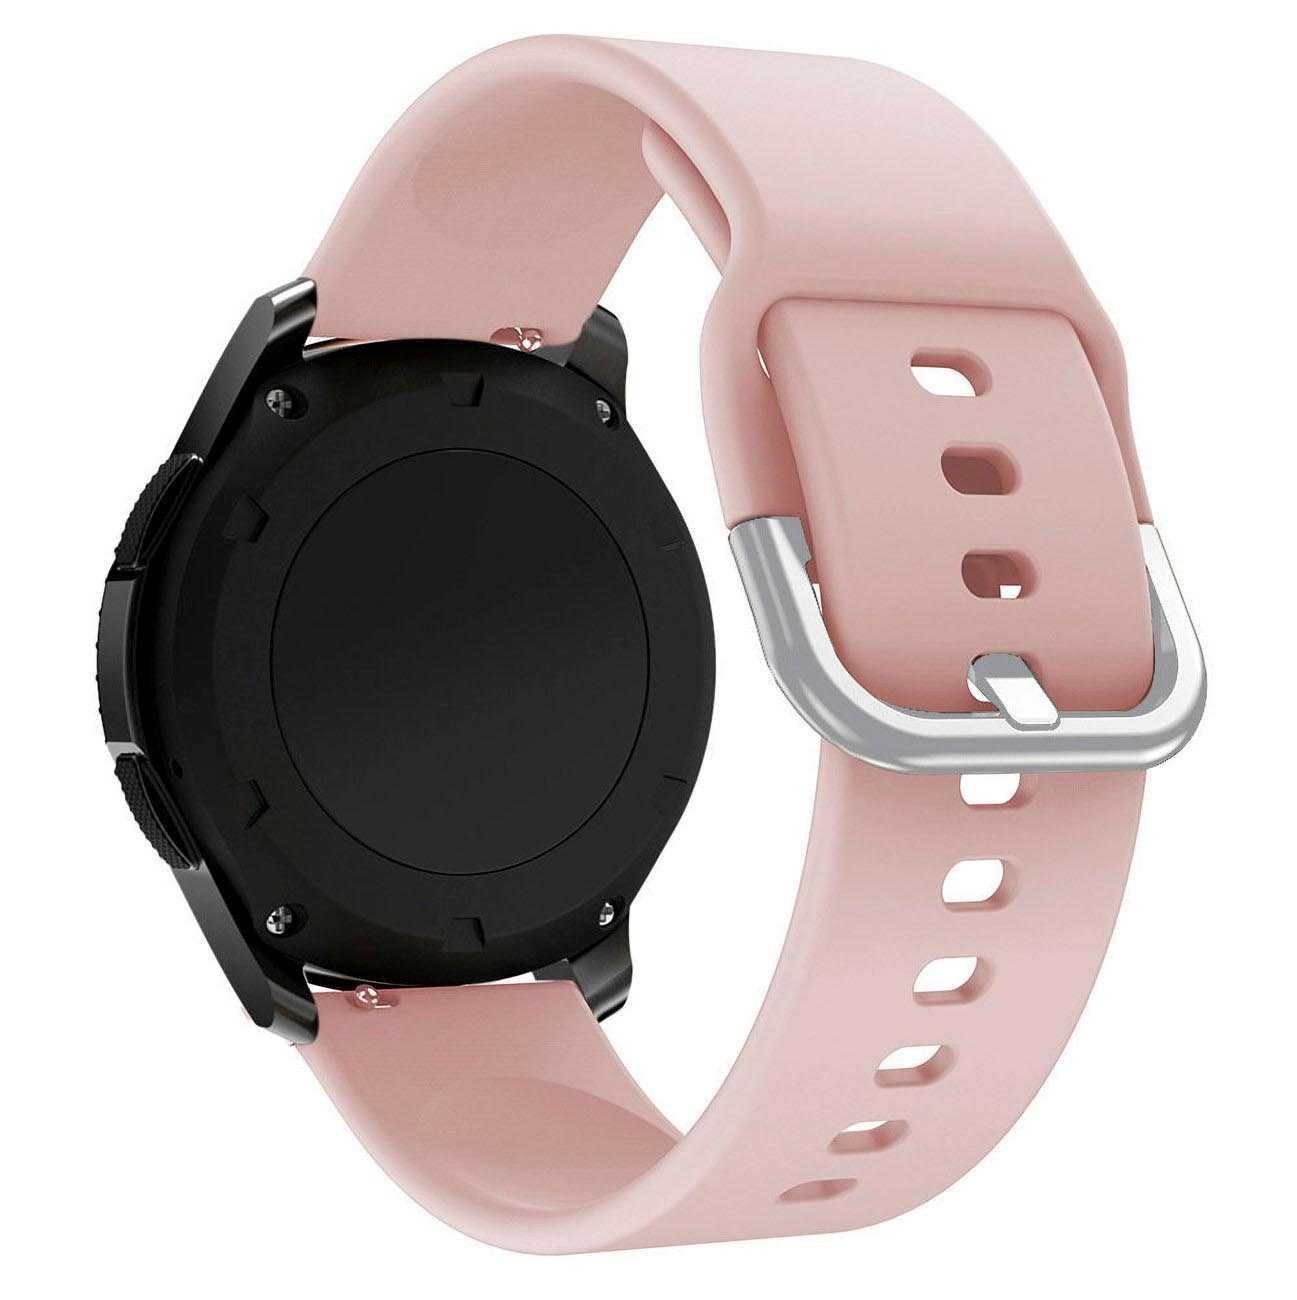 Pasek uniwersalny 22 mm do smartwatcha / zegarka kolor: różowy